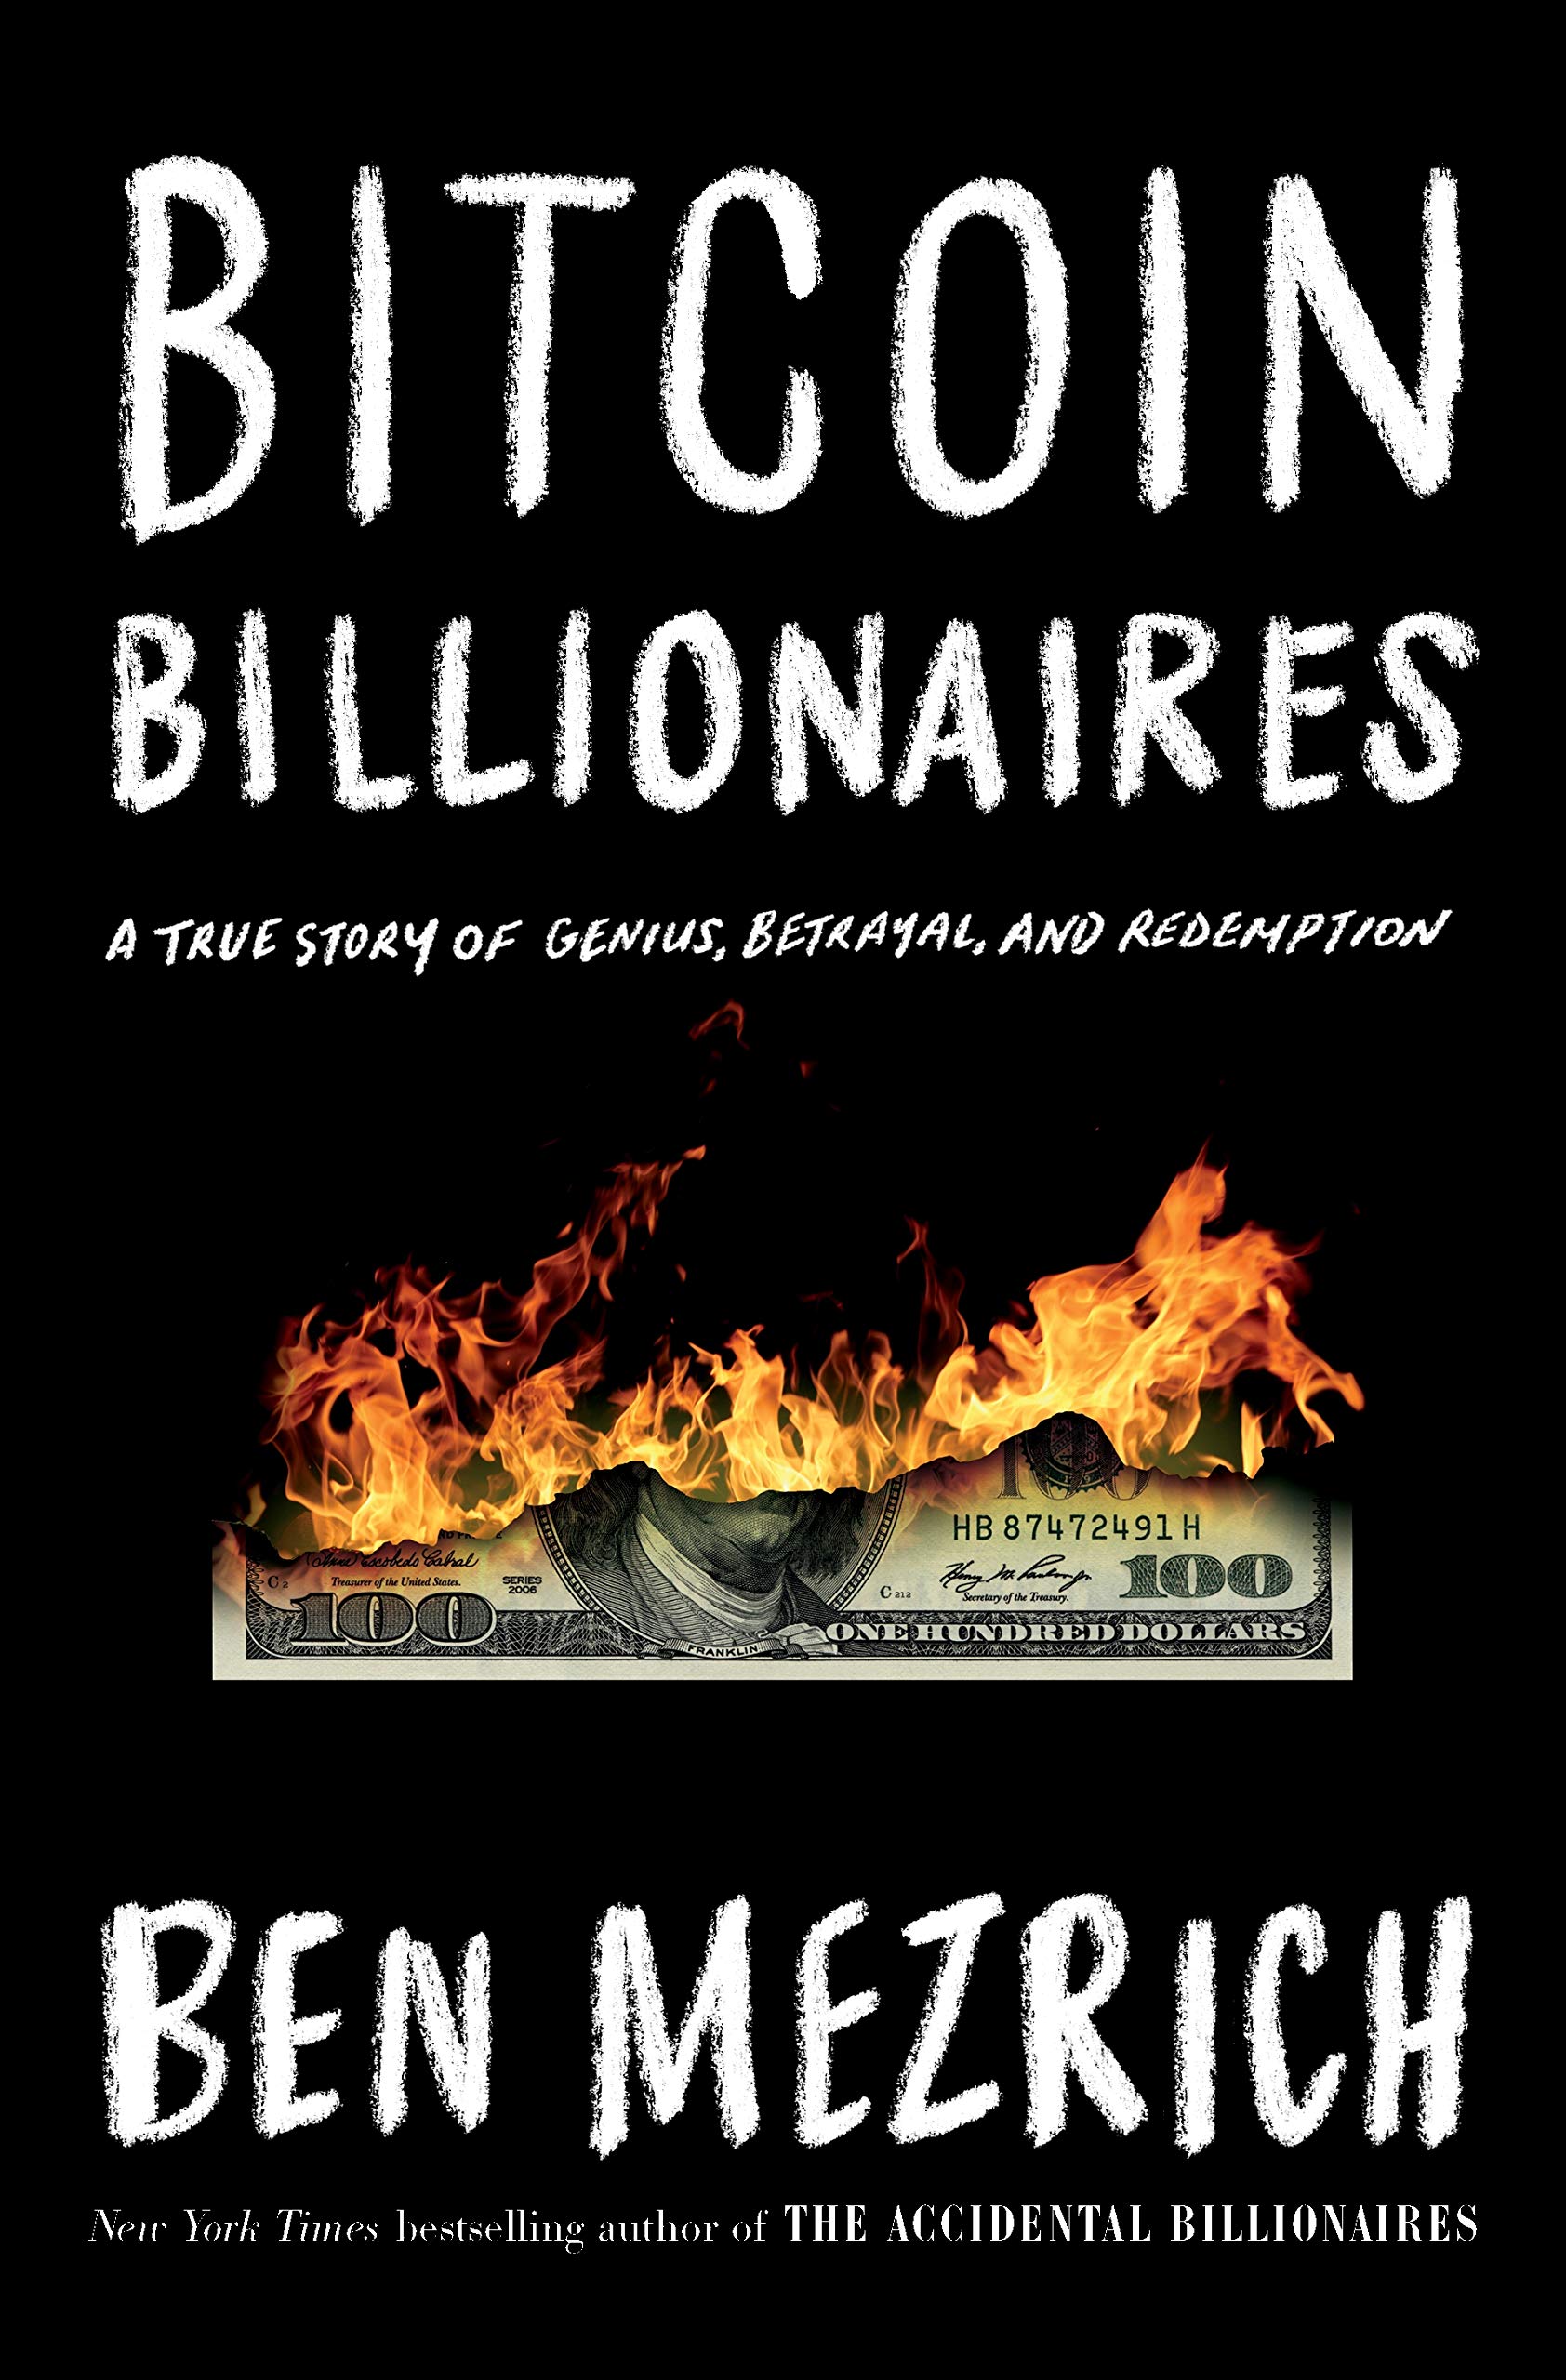 Review “Bitcoin Billionaires” by Ben Mezrich